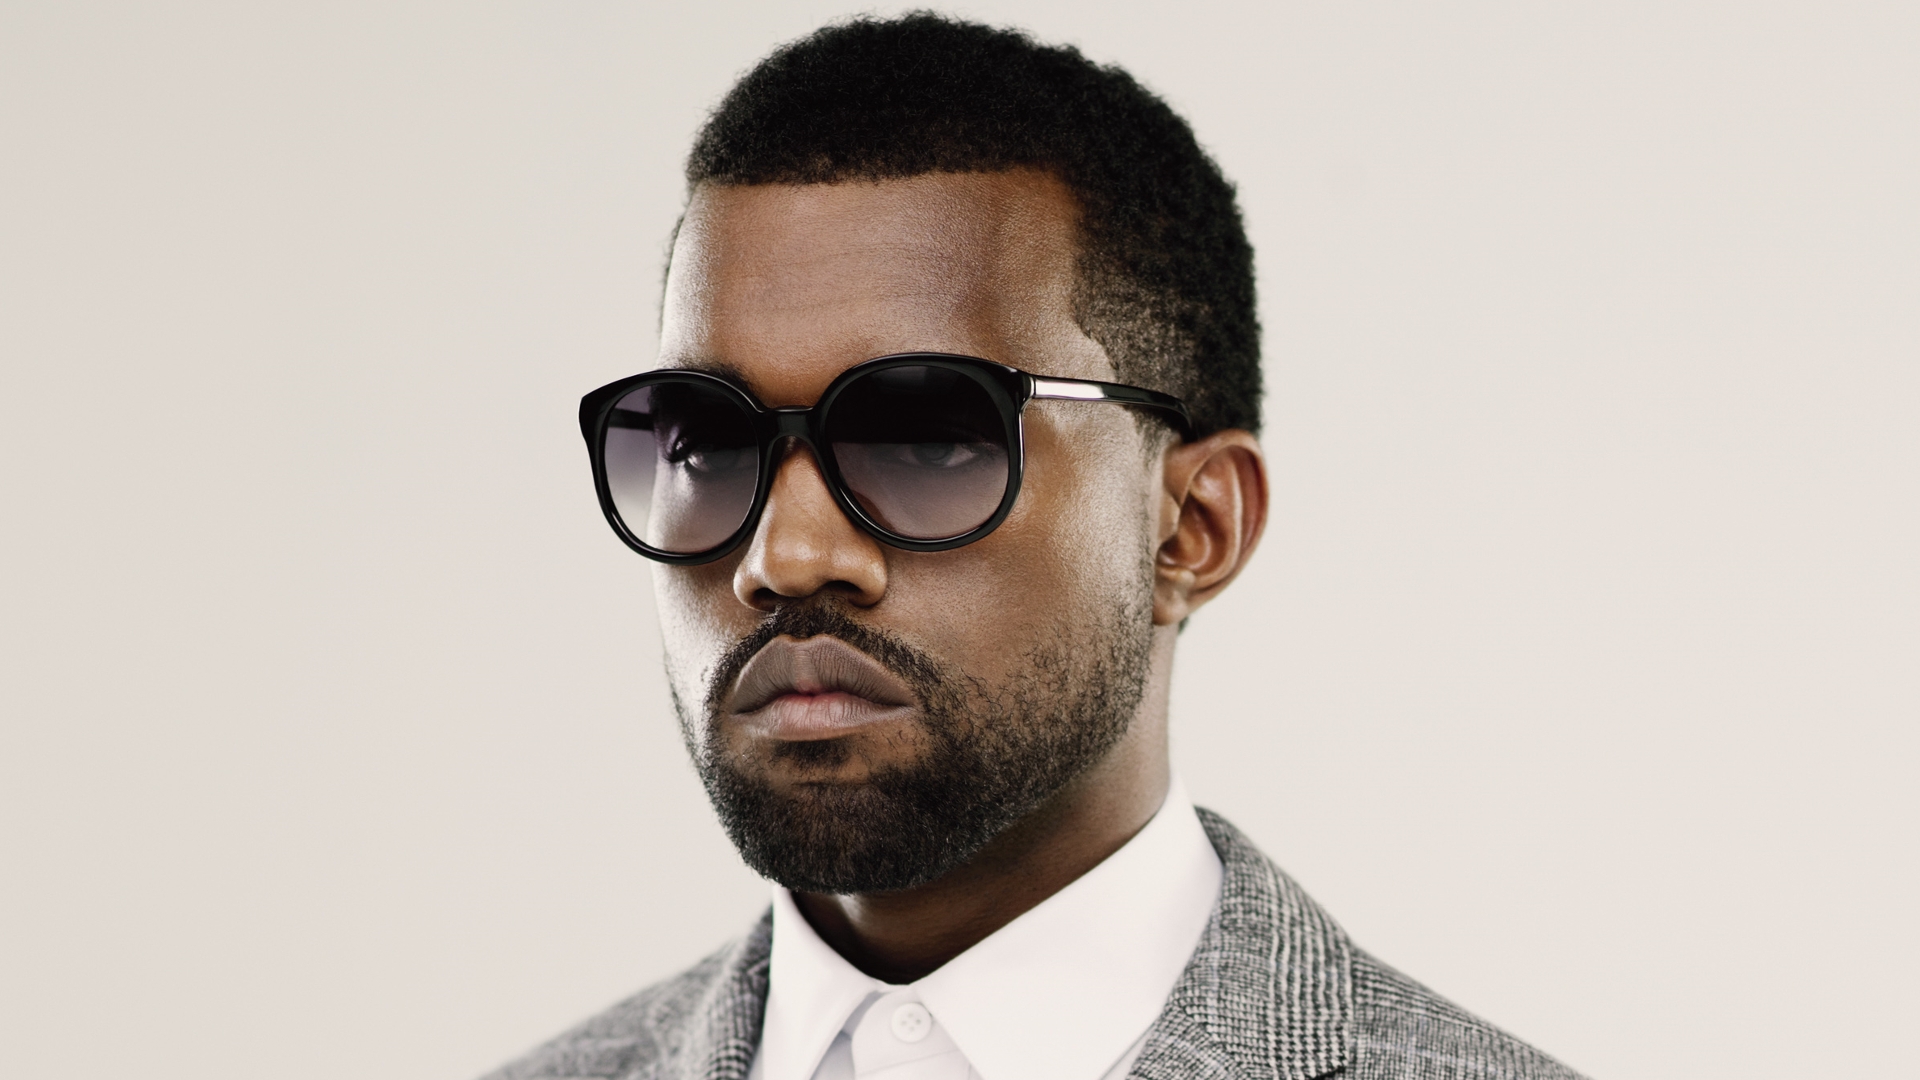 Kanye West Desktop Backgrounds   Wallpaper High Definition High